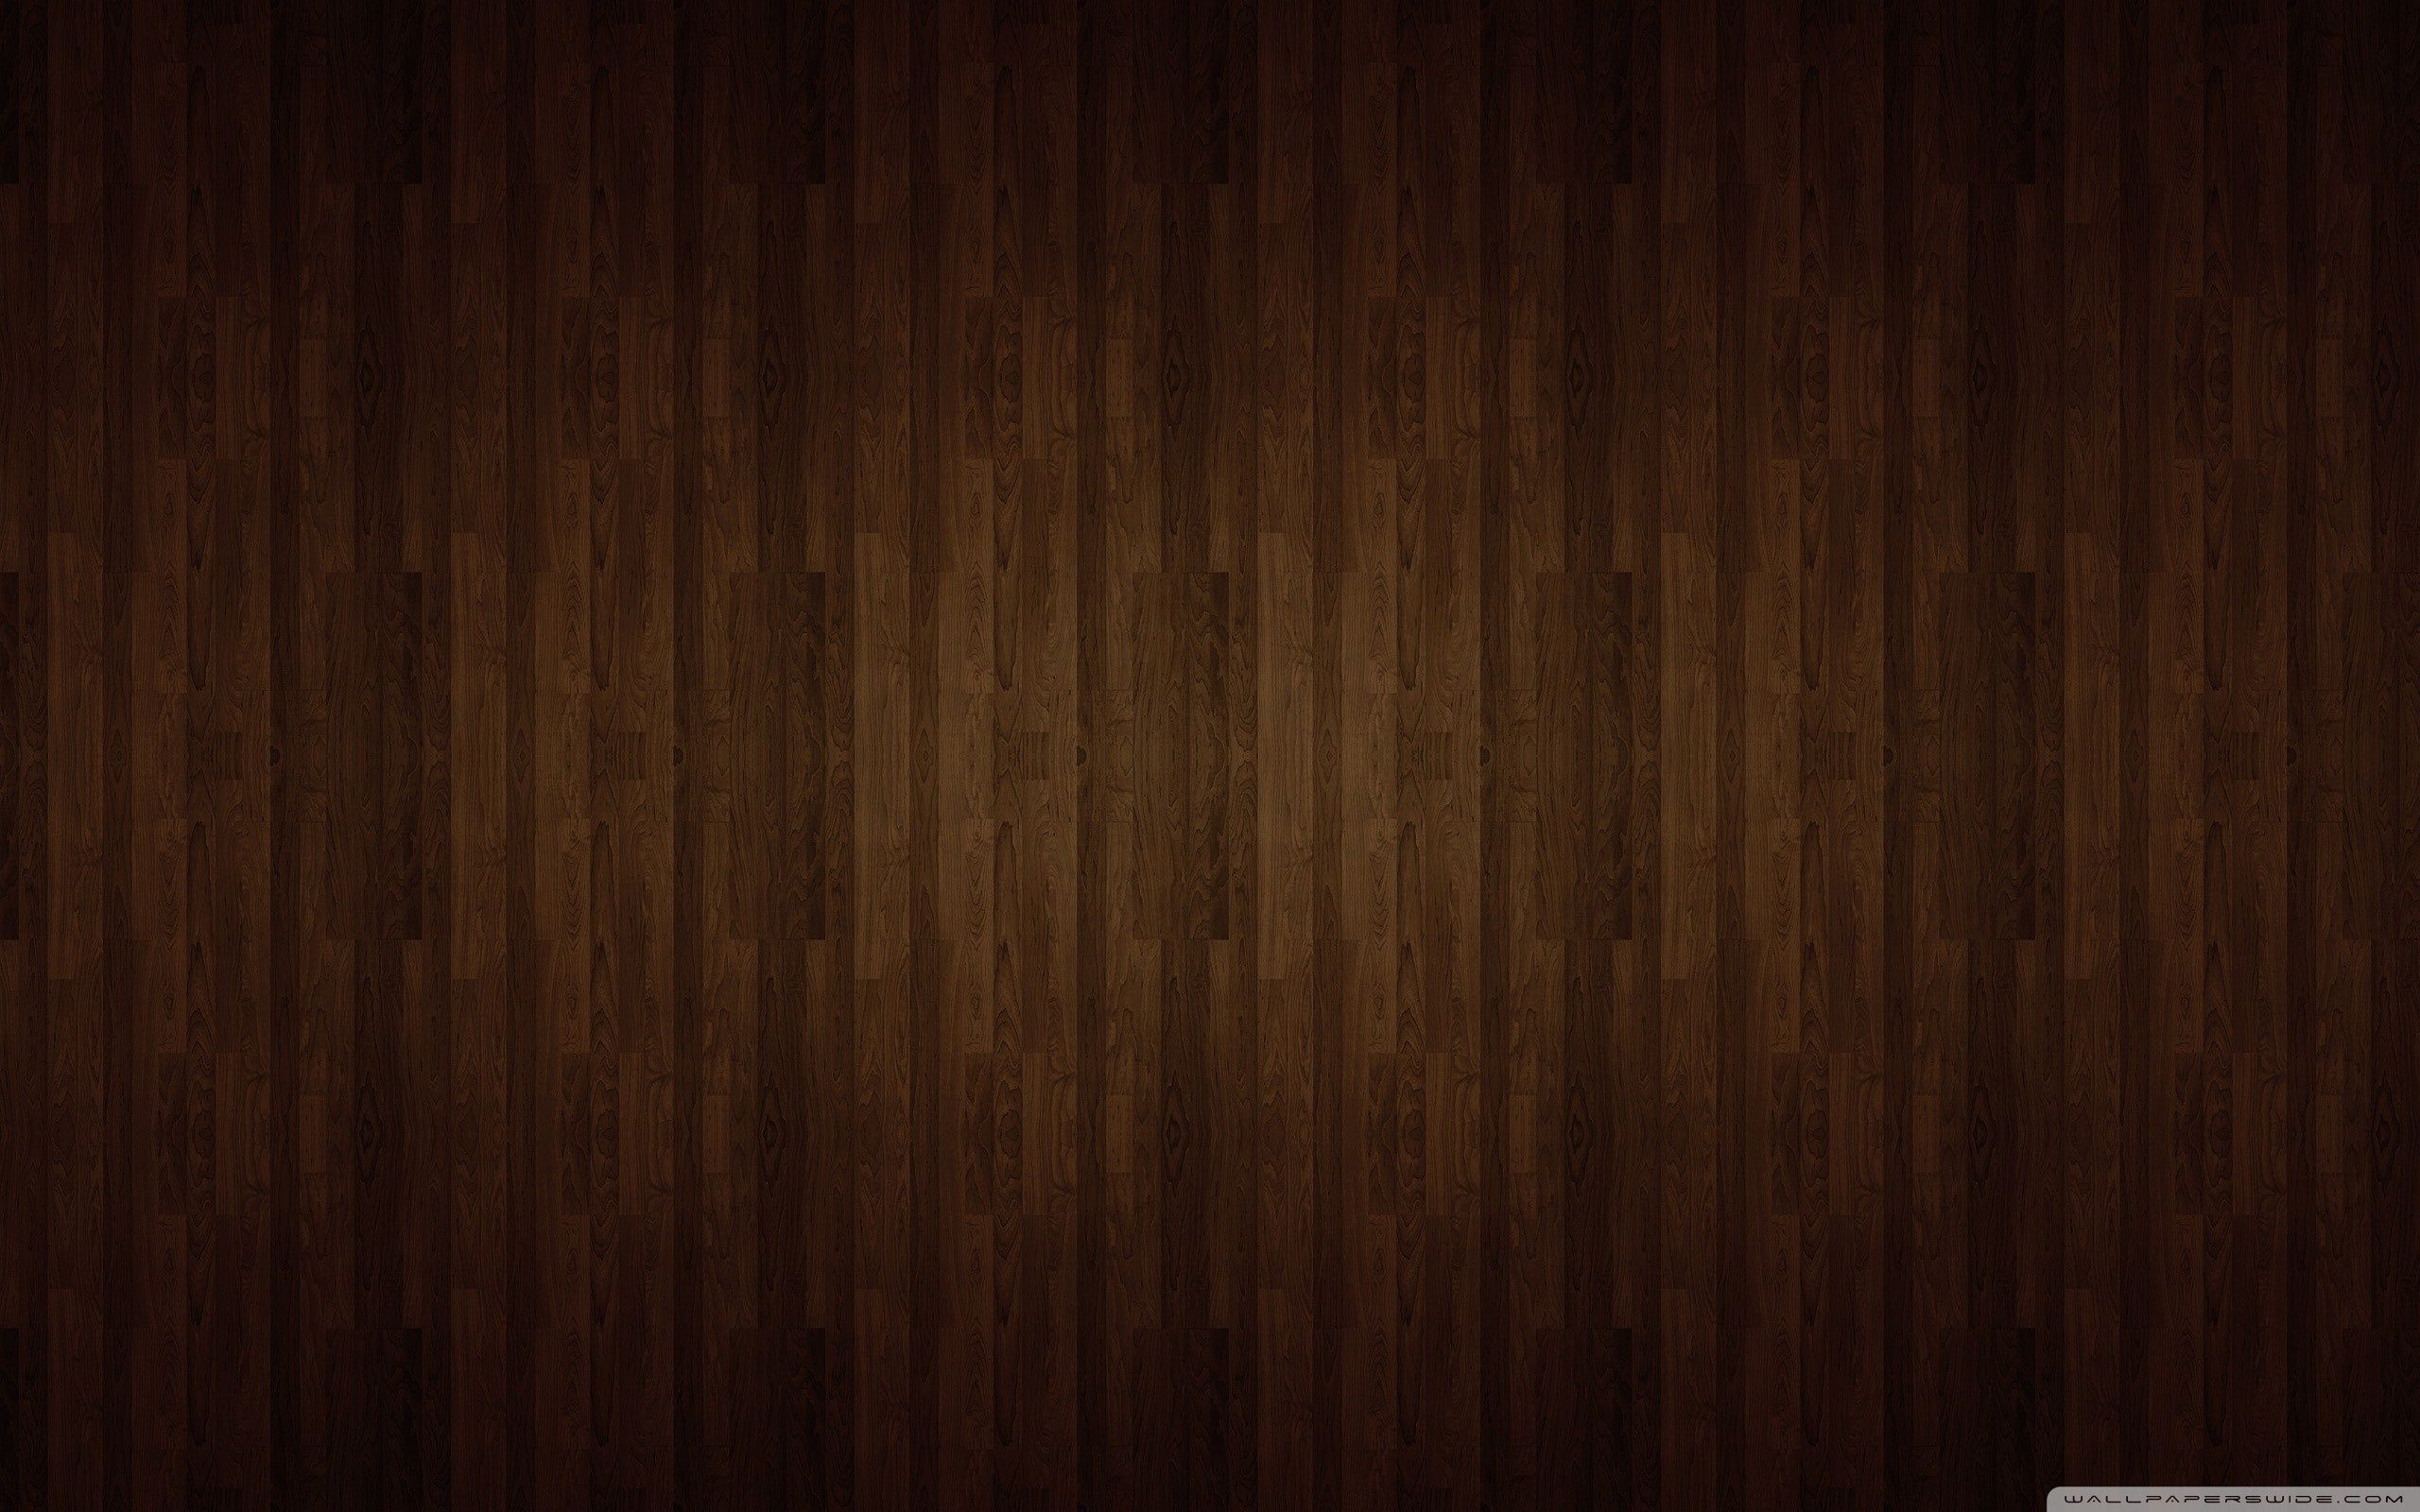 Hình nền gỗ nâu tuyệt đẹp sẽ làm cho màn hình máy tính của bạn trở nên sang trọng và đẳng cấp hơn. Tìm hiểu thêm về những dòng giấy dán tường gỗ nâu tại các hình ảnh liên quan để tìm một không gian trang nhã và hiện đại cho căn phòng của bạn.